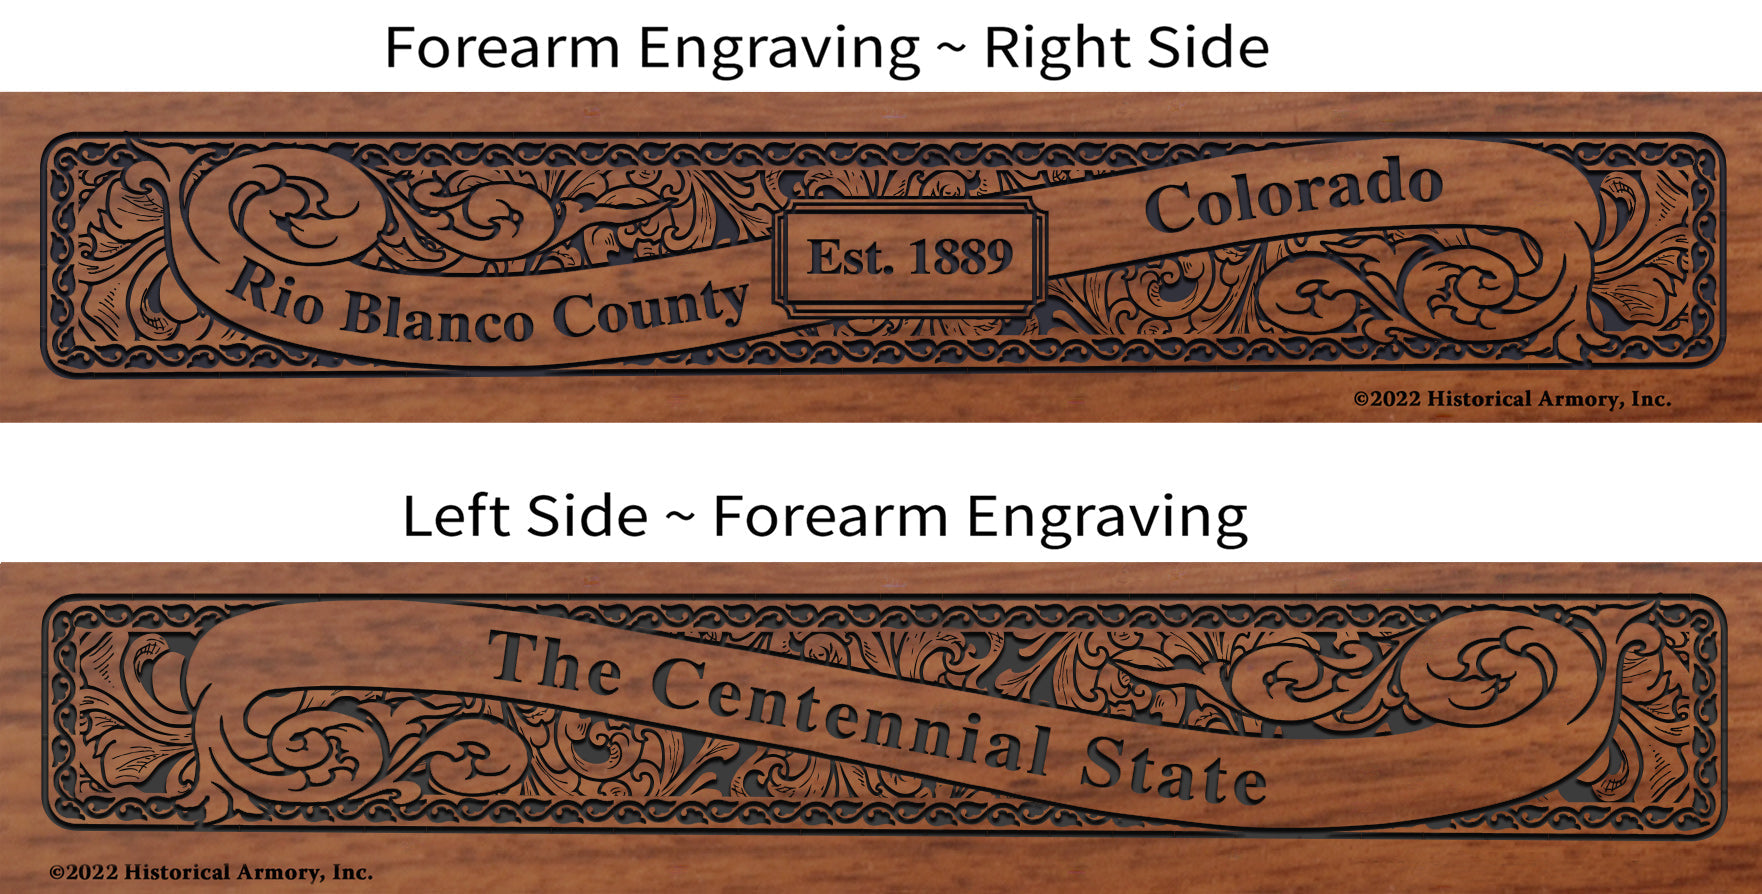 Rio Blanco County Colorado Engraved Rifle Forearm